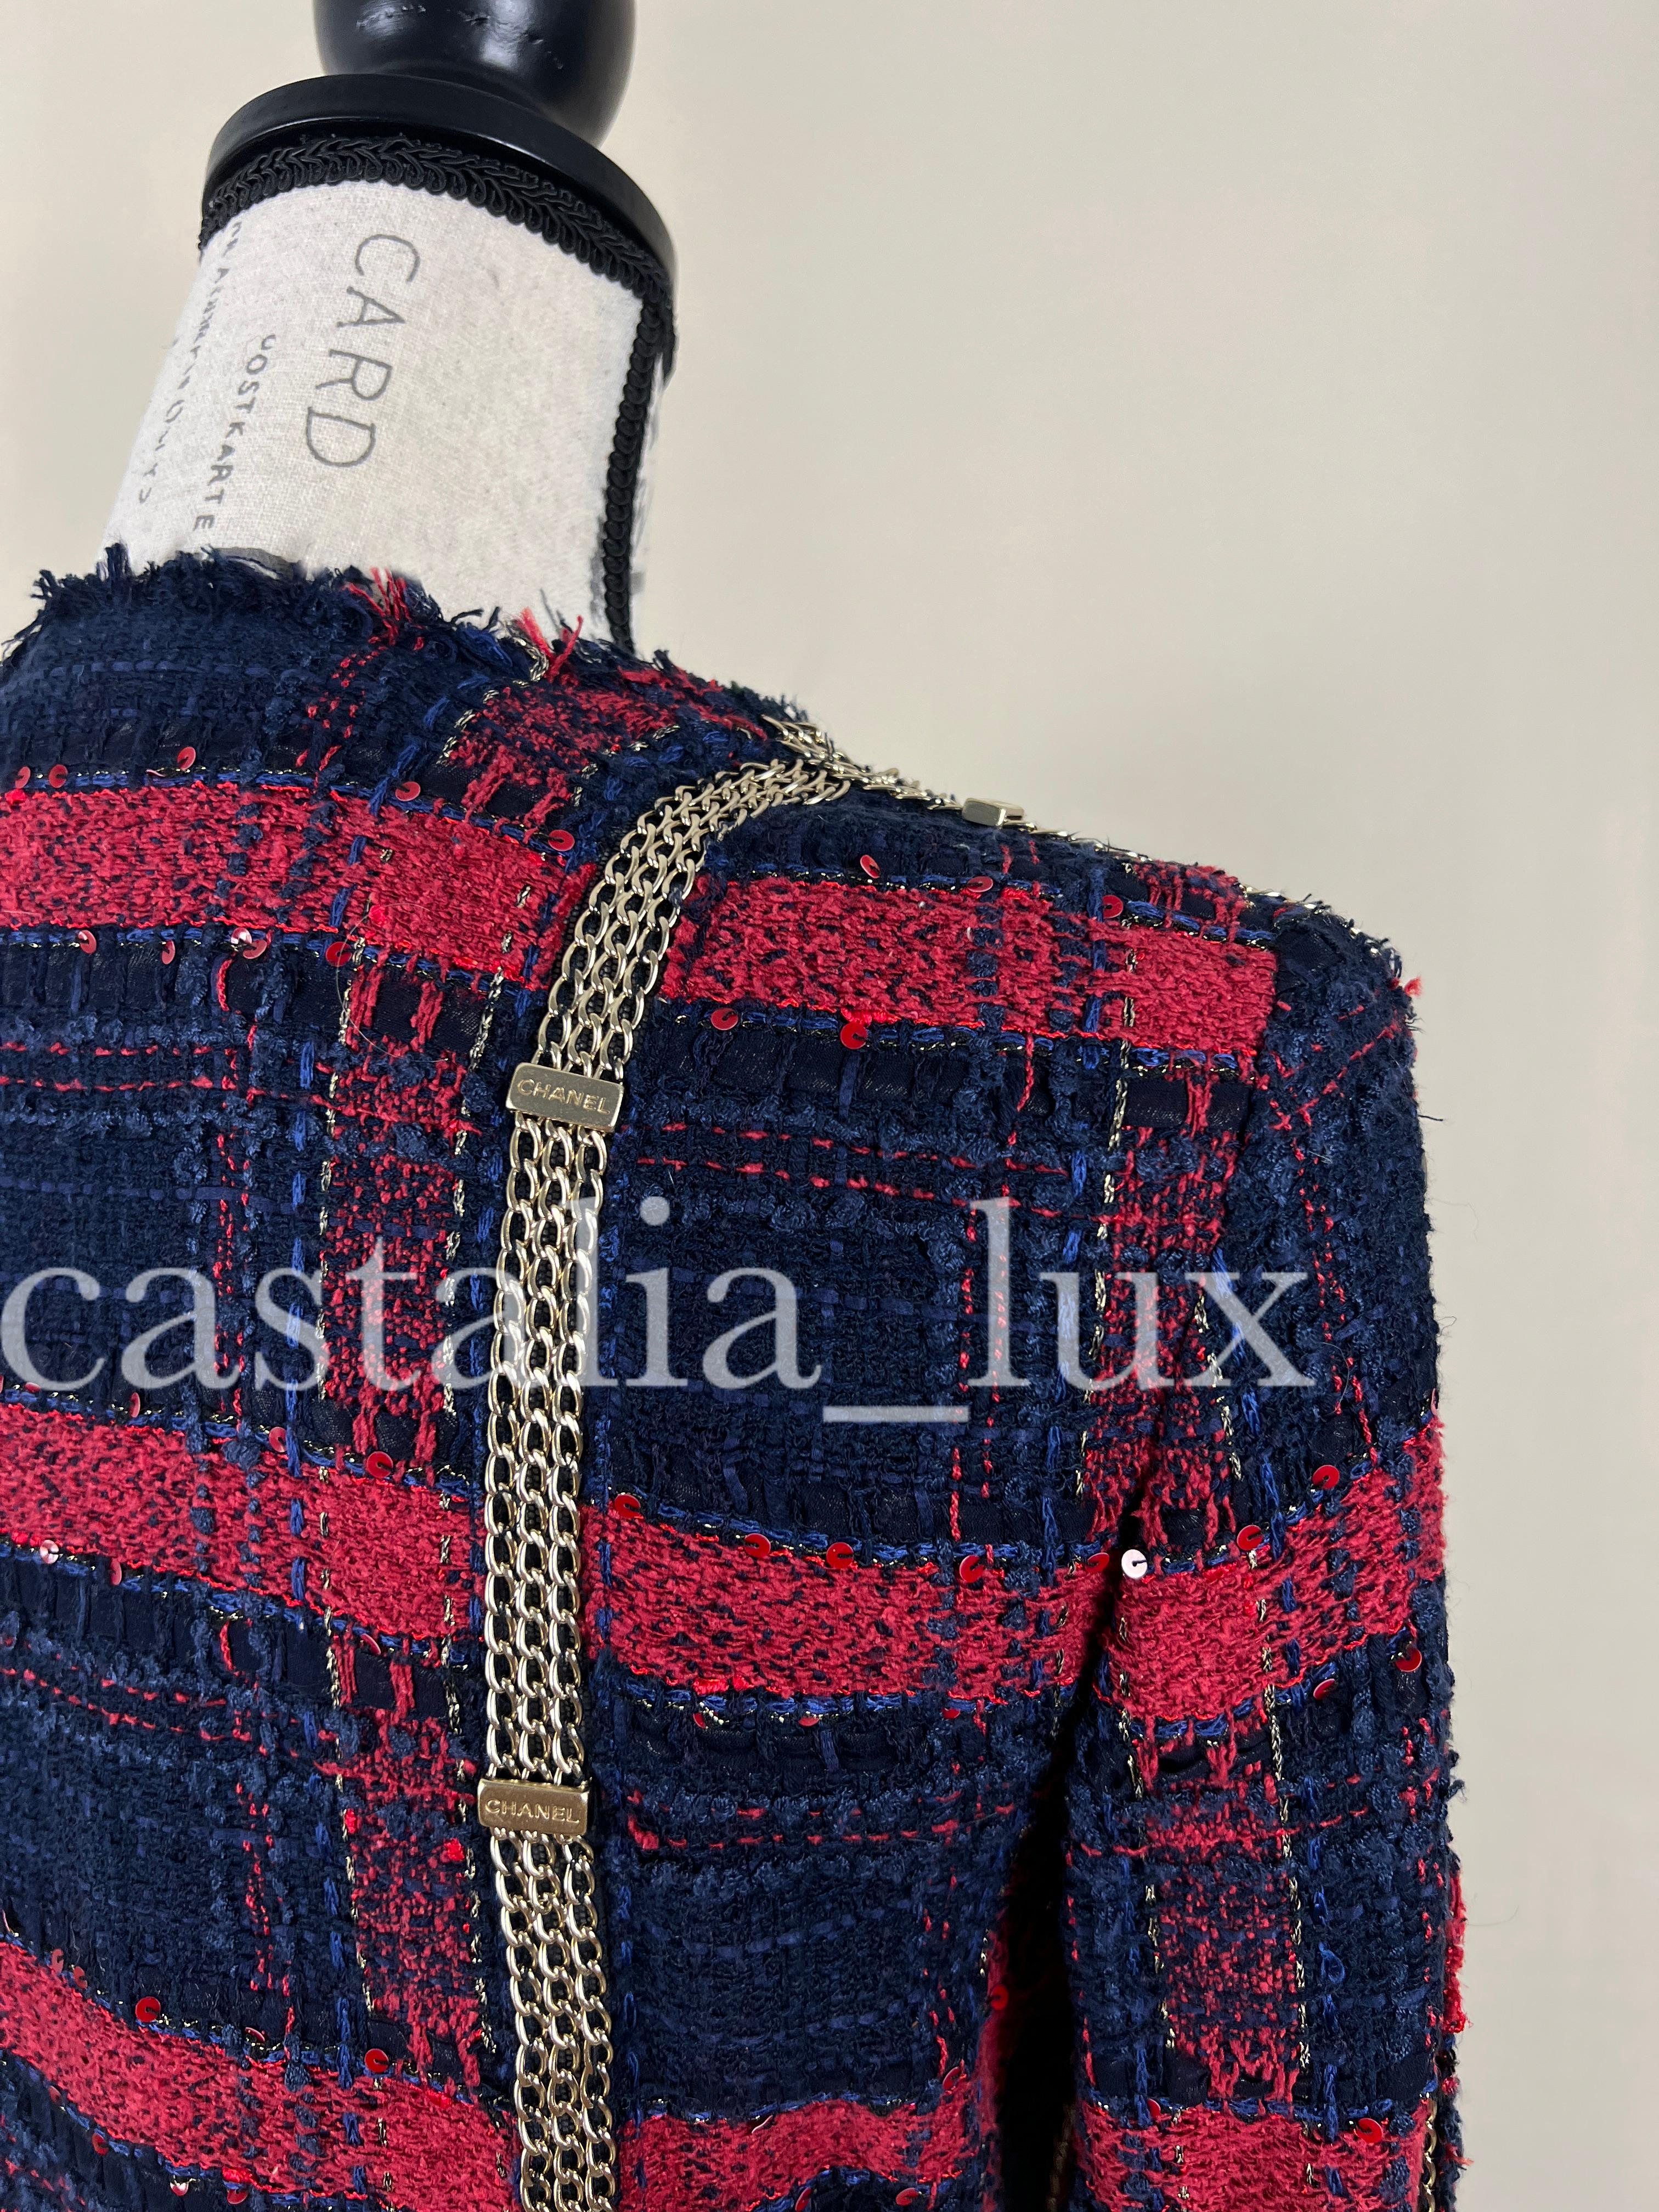 Chanel Extrem seltene Tweed-Jacke mit Kettenbesatz und Logo 9